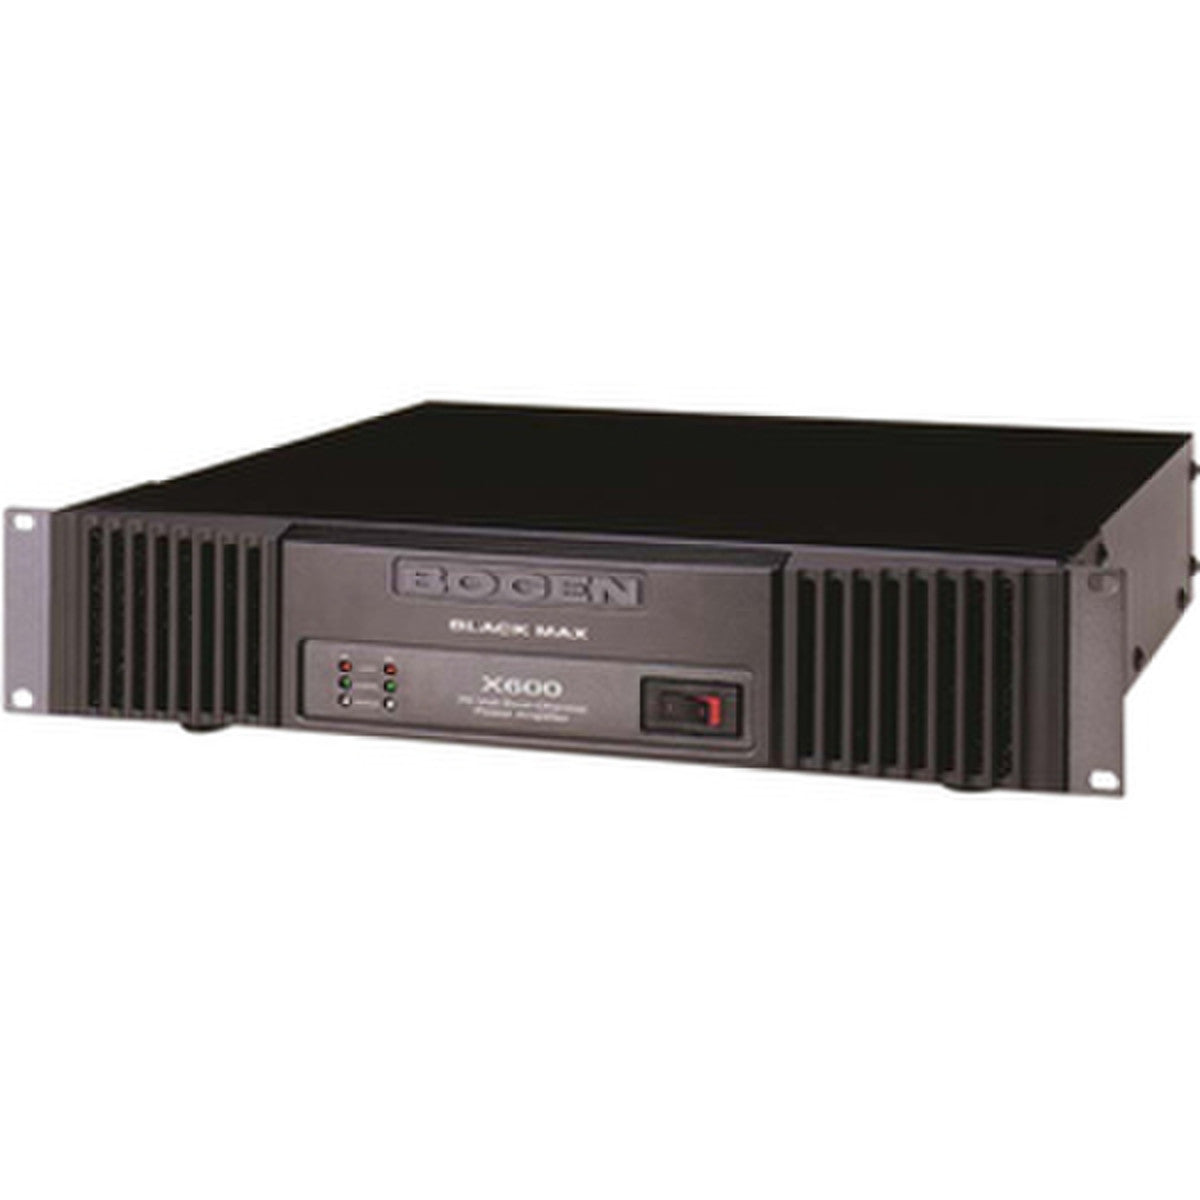 Bogen Black Max X600 Amplifier - 600 W RMS - 2 Channel (X600) | New